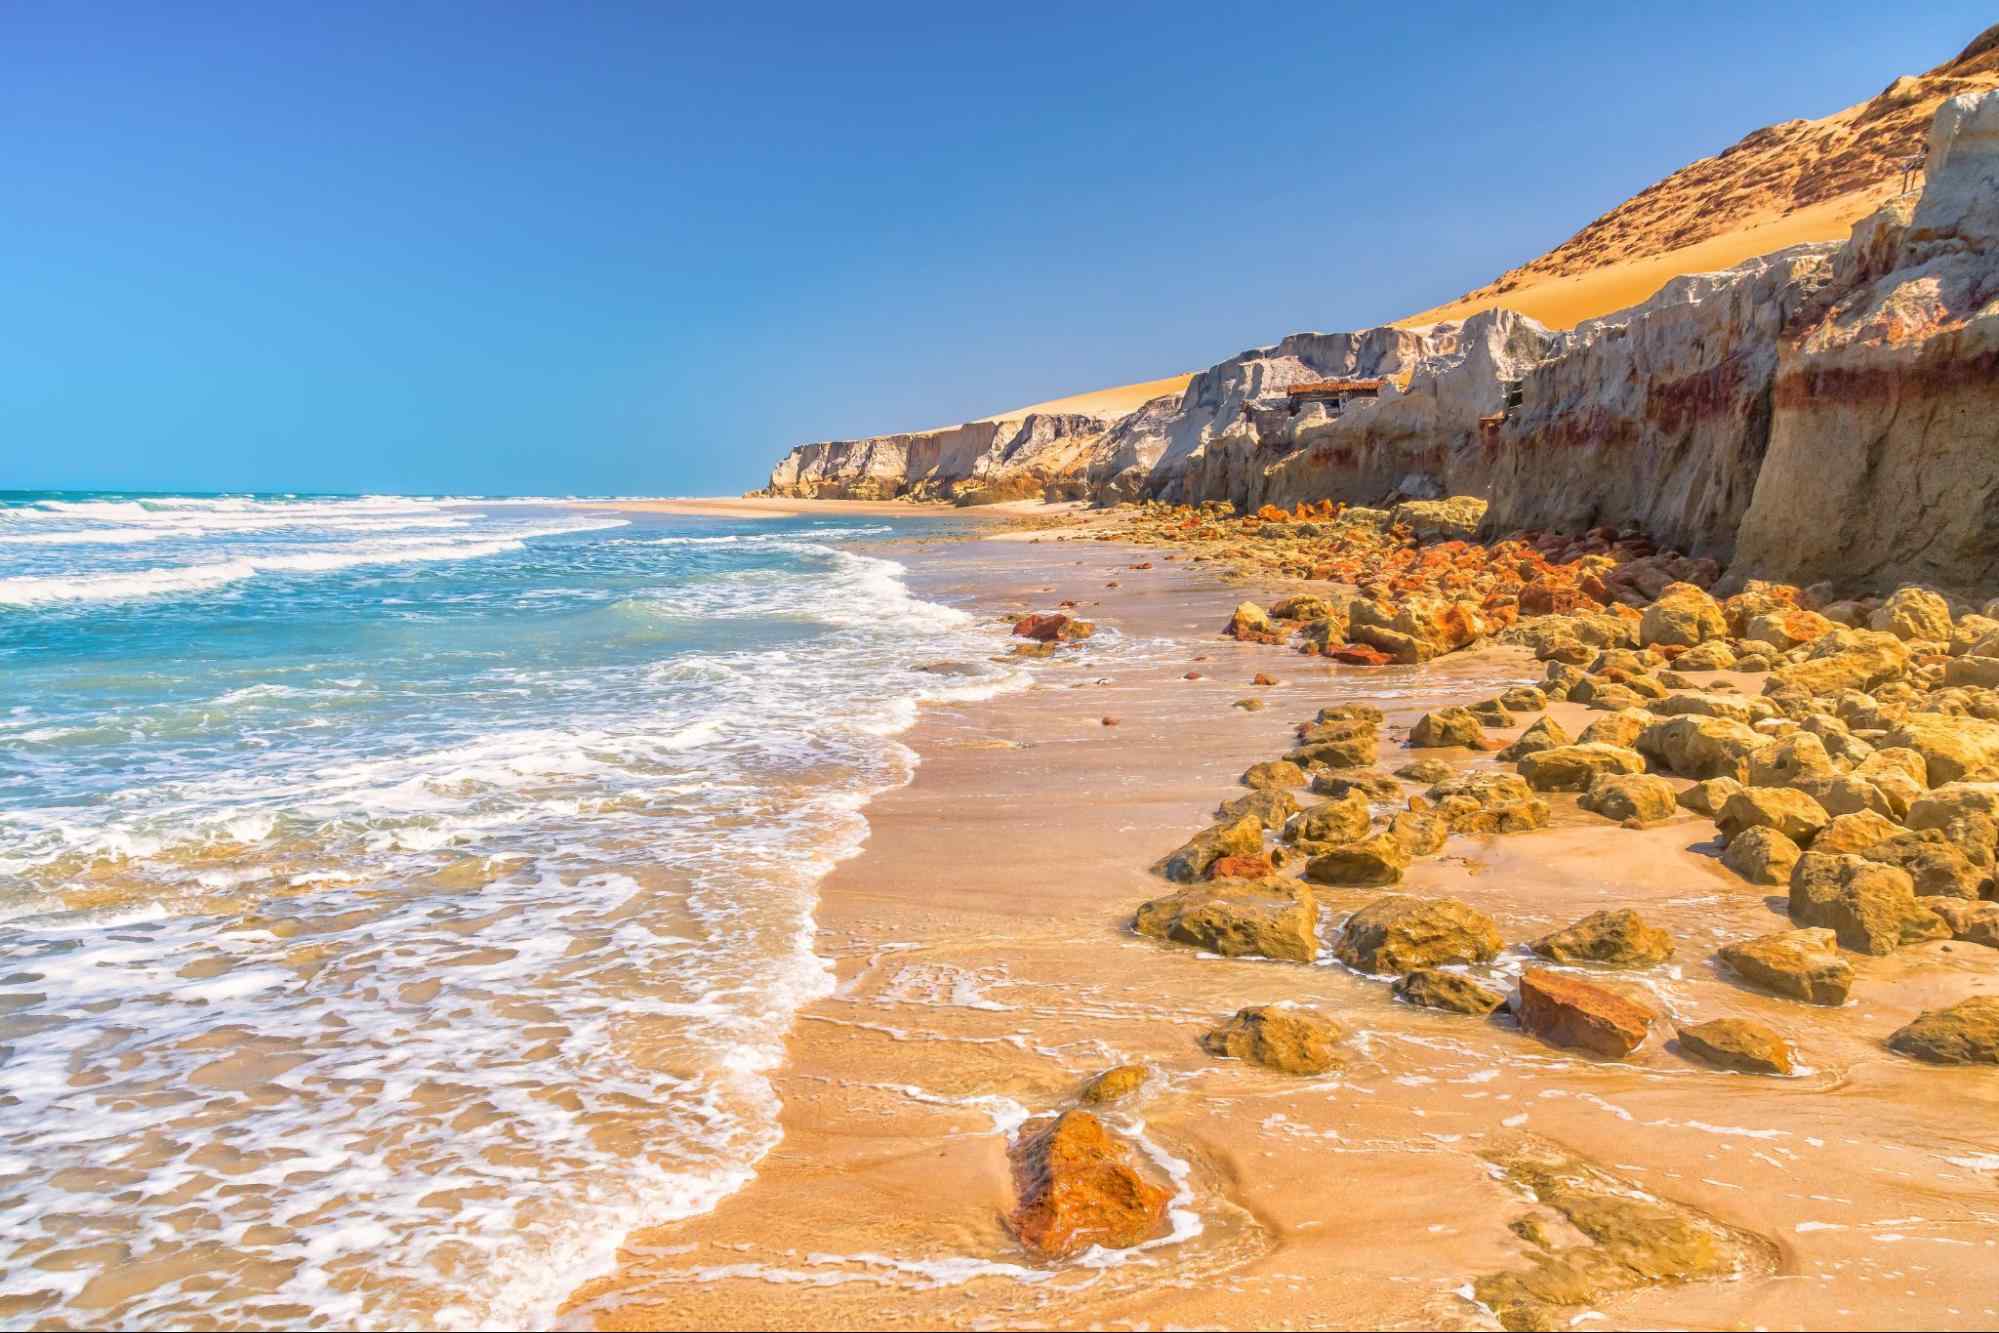 faixa de mar chegando na areia da praia de Beberibe, que está tomada por pequenas pedras do paredão de falésias que se estende no lado direito até o horizonte.